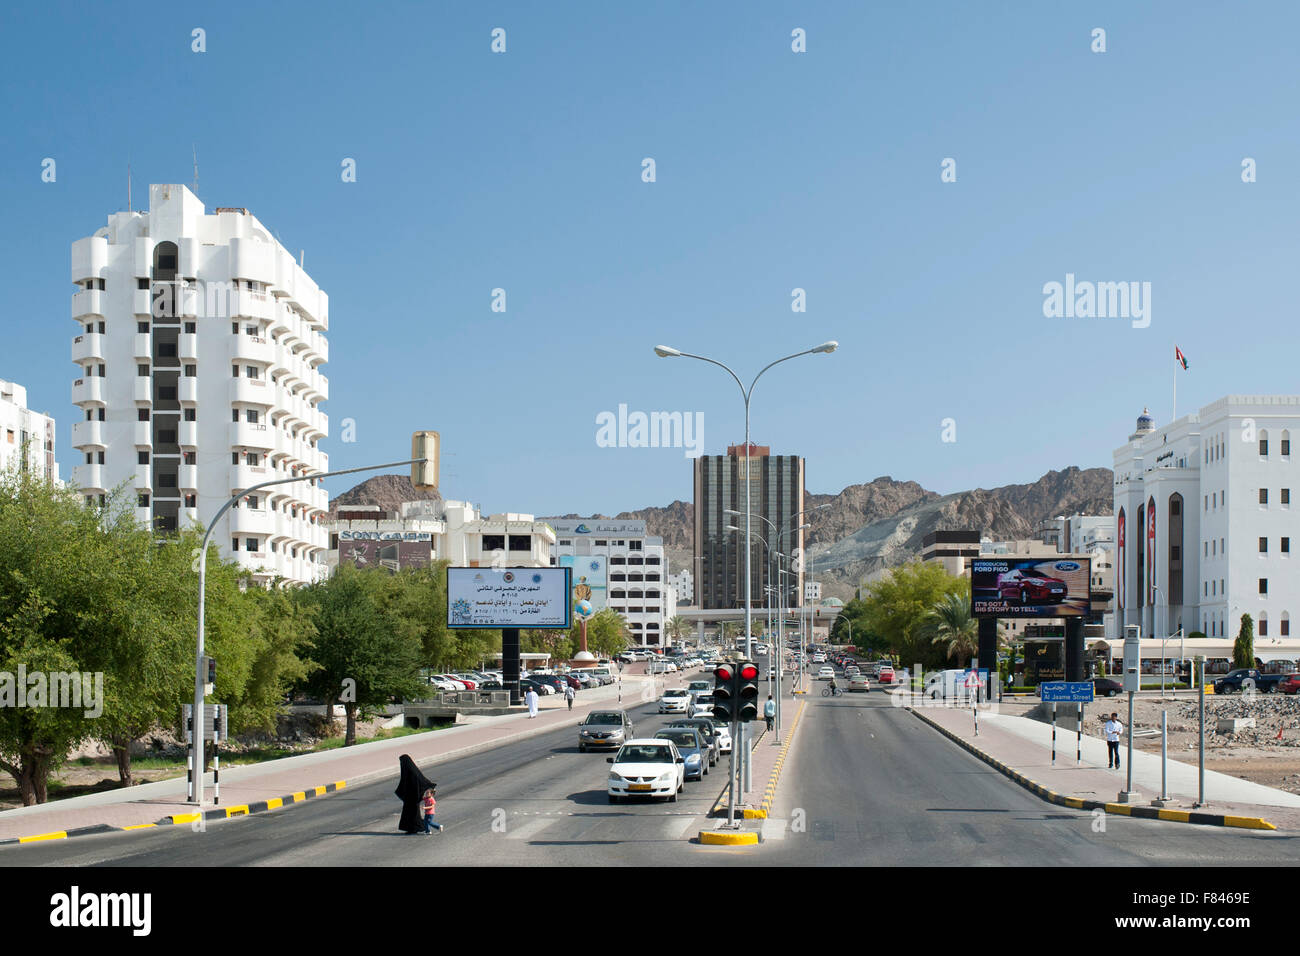 Ruwi, district dans la région de Mascate, la capitale du Sultanat d'Oman. Banque D'Images